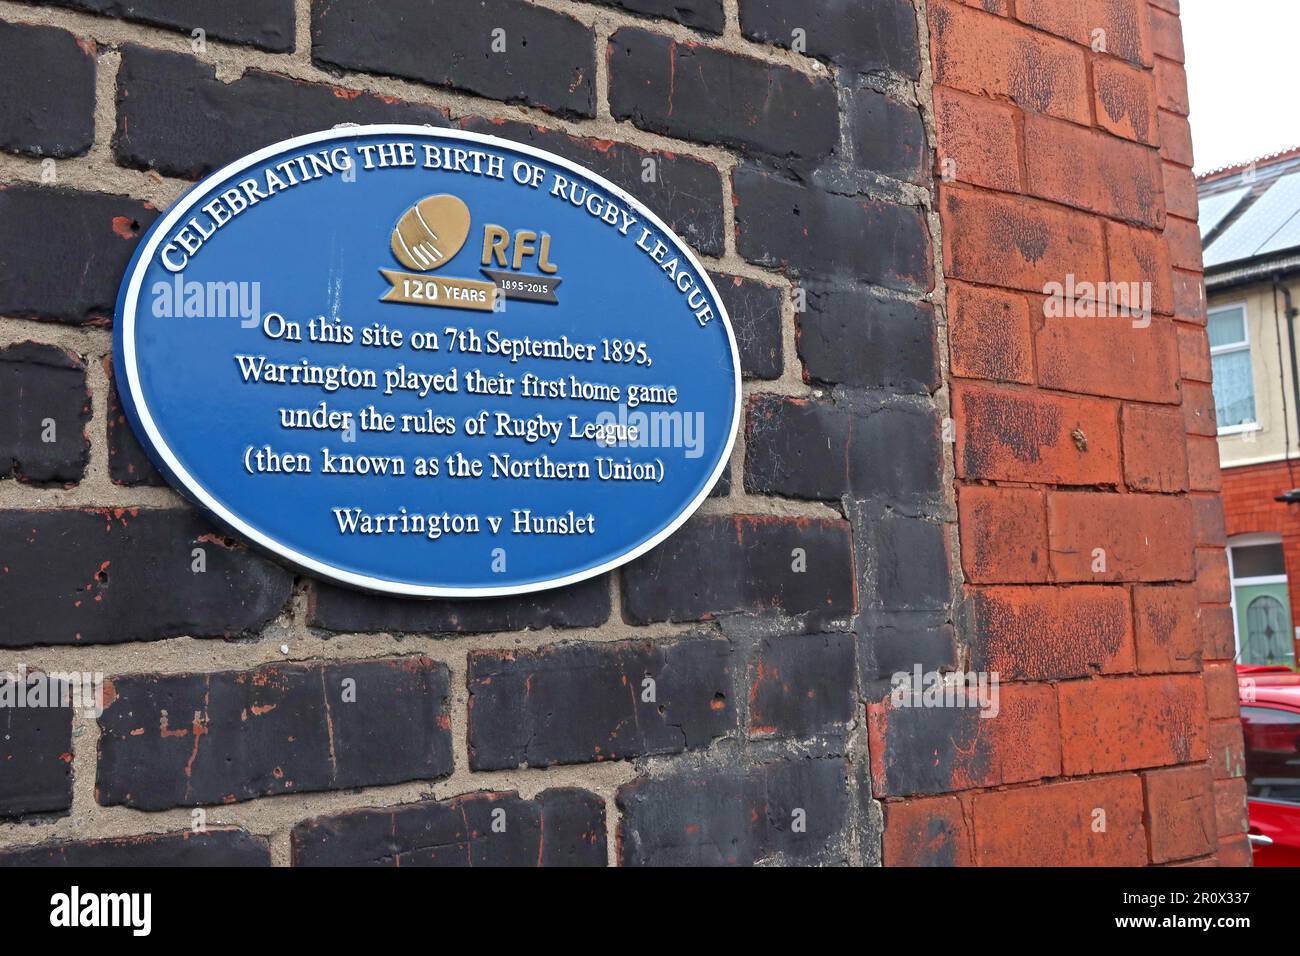 Célébration de la naissance de la ligue de rugby - Blue plaque à Fletcher Street -RFL Warrington v Hunslet 1895, Fletcher Street, Warrington,Cheshire,UK,WA4 6PY Banque D'Images